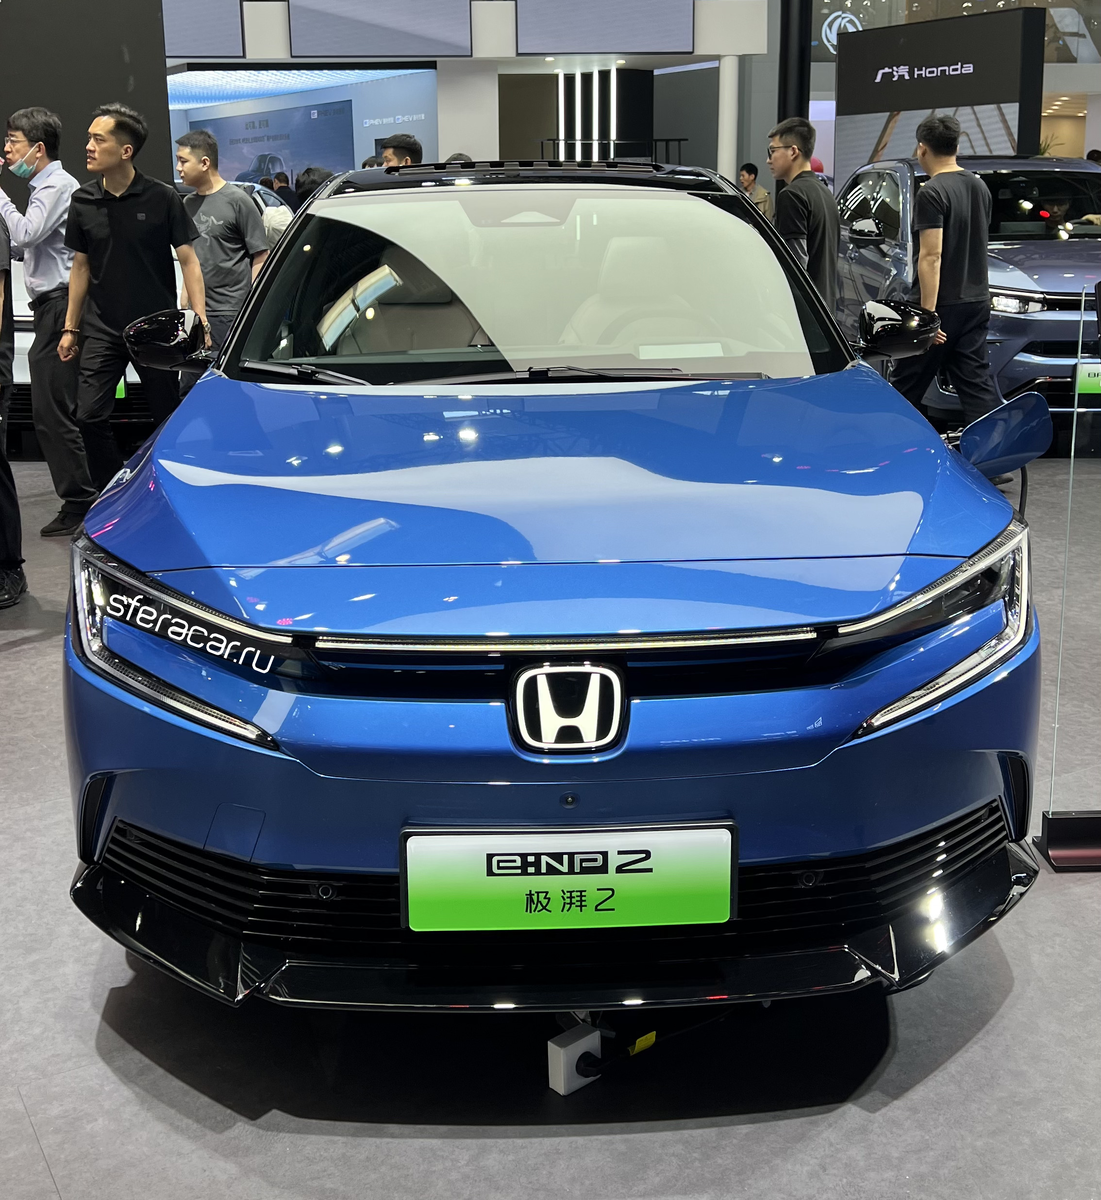 18–я Международная автомобильная выставка в Пекине, проходившая с 25 апреля по 4 мая, ориентирована на «зеленую» энергетику и новейшие технологии в отрасли.-1-2